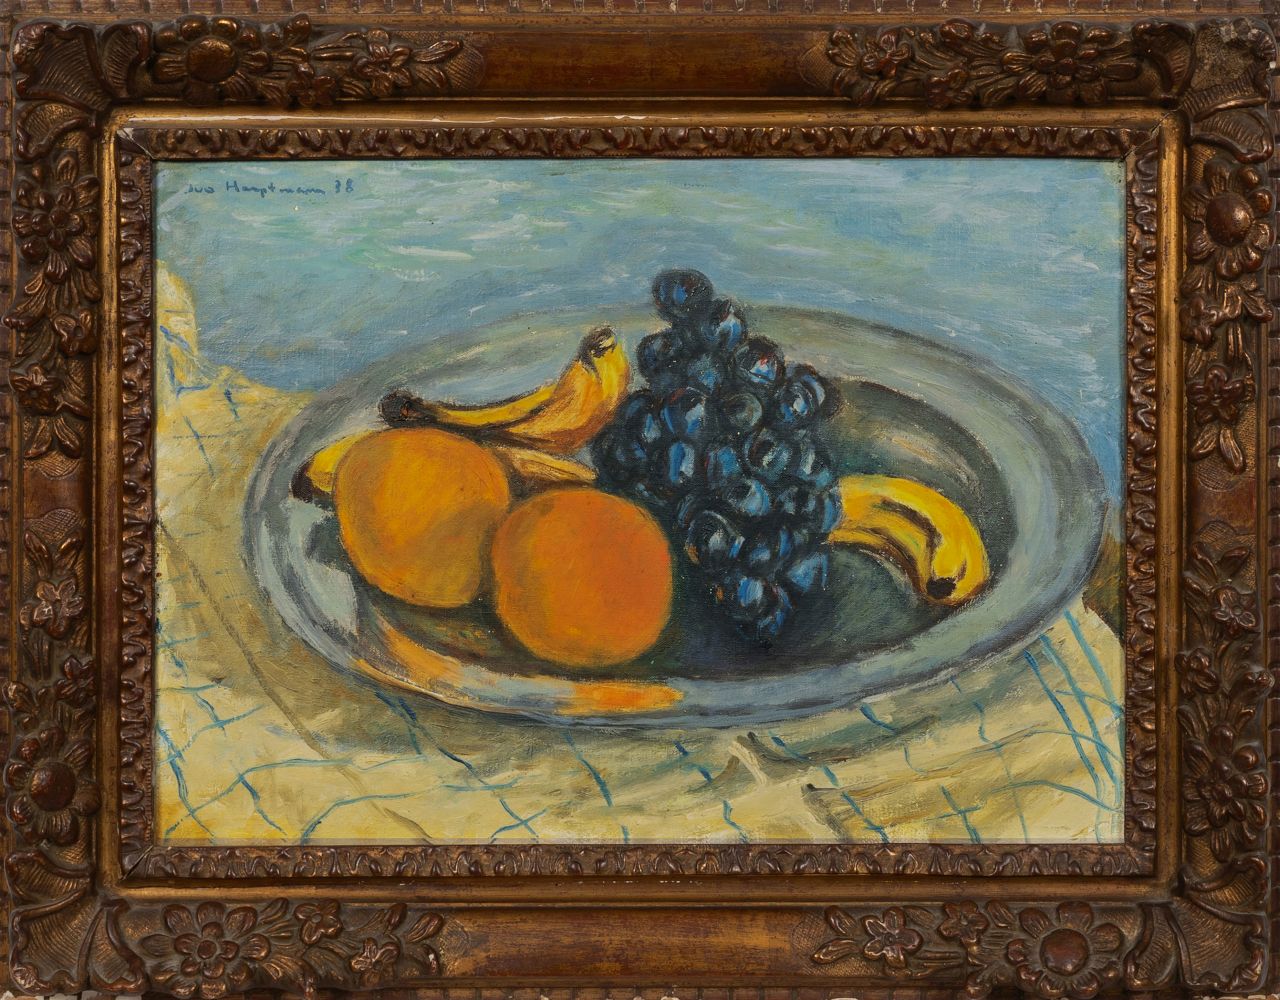 Obst in einer Schale - Bild 2